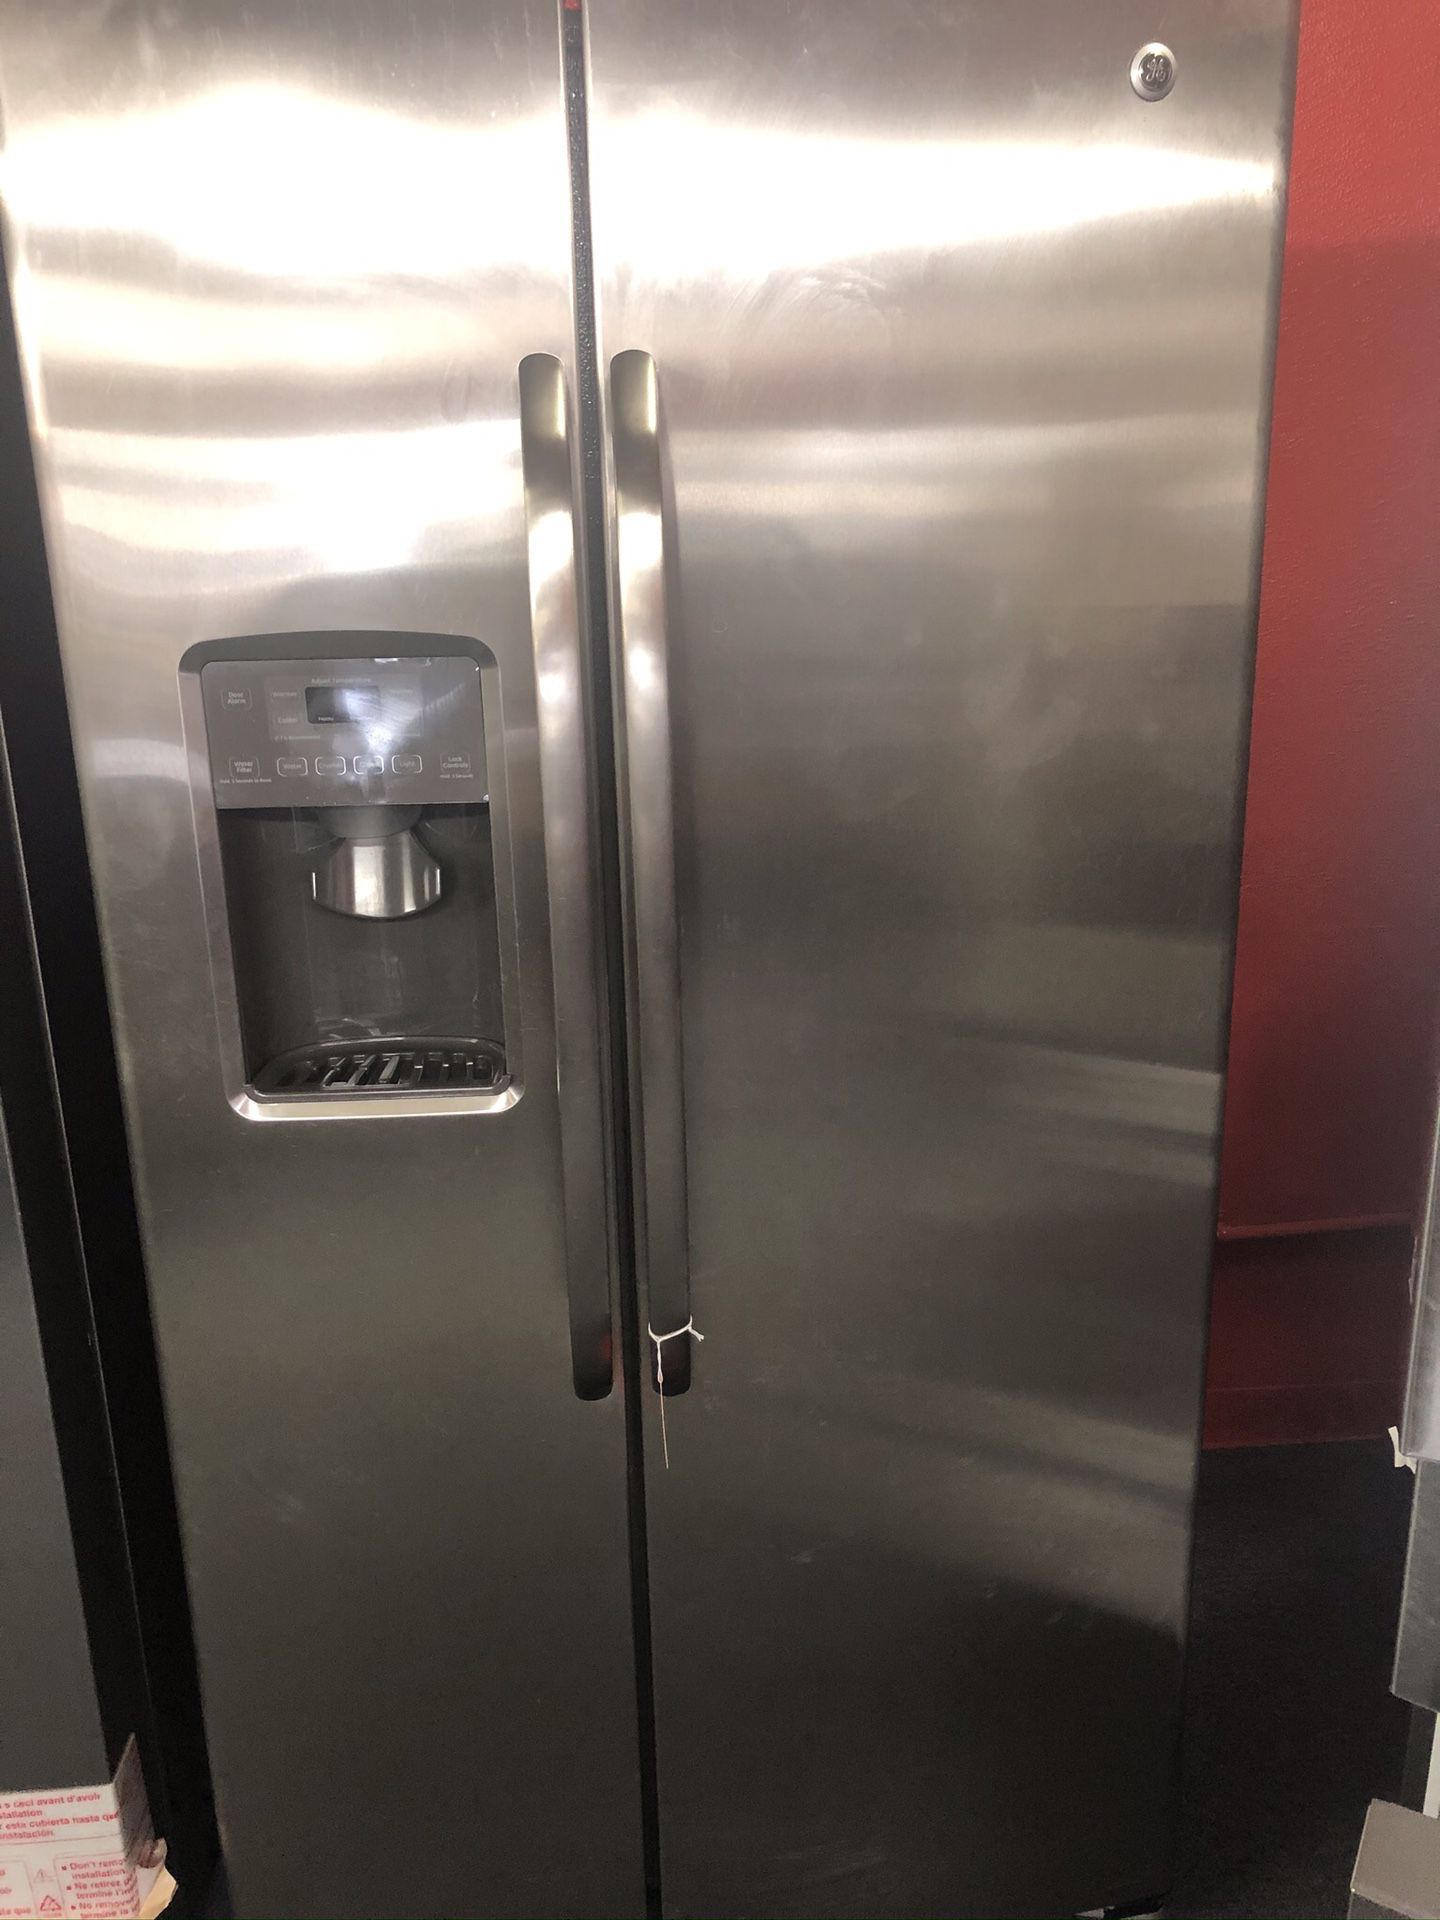 Used GE 27 cu ft stainless steel side by side fridge. 1 year warranty